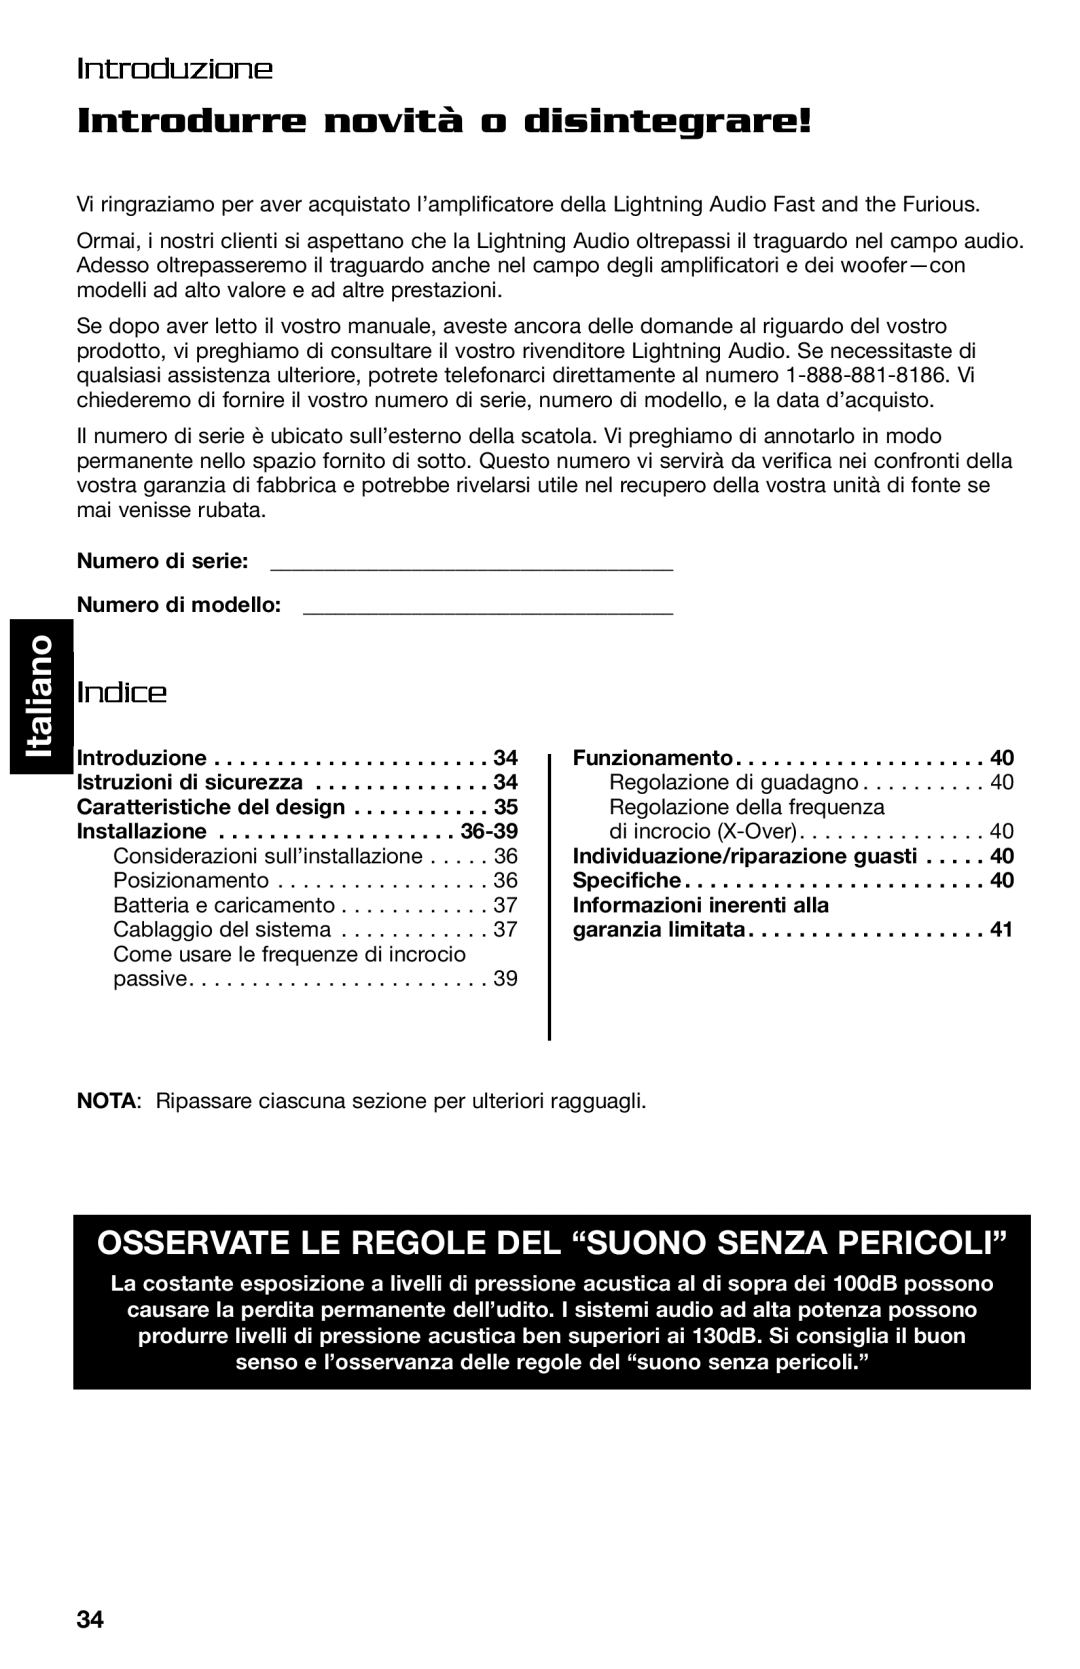 Lightning Audio FF250.1, FF150.2 manual Introdurre novità o disintegrare, Italiano, Introduzione, Indice 